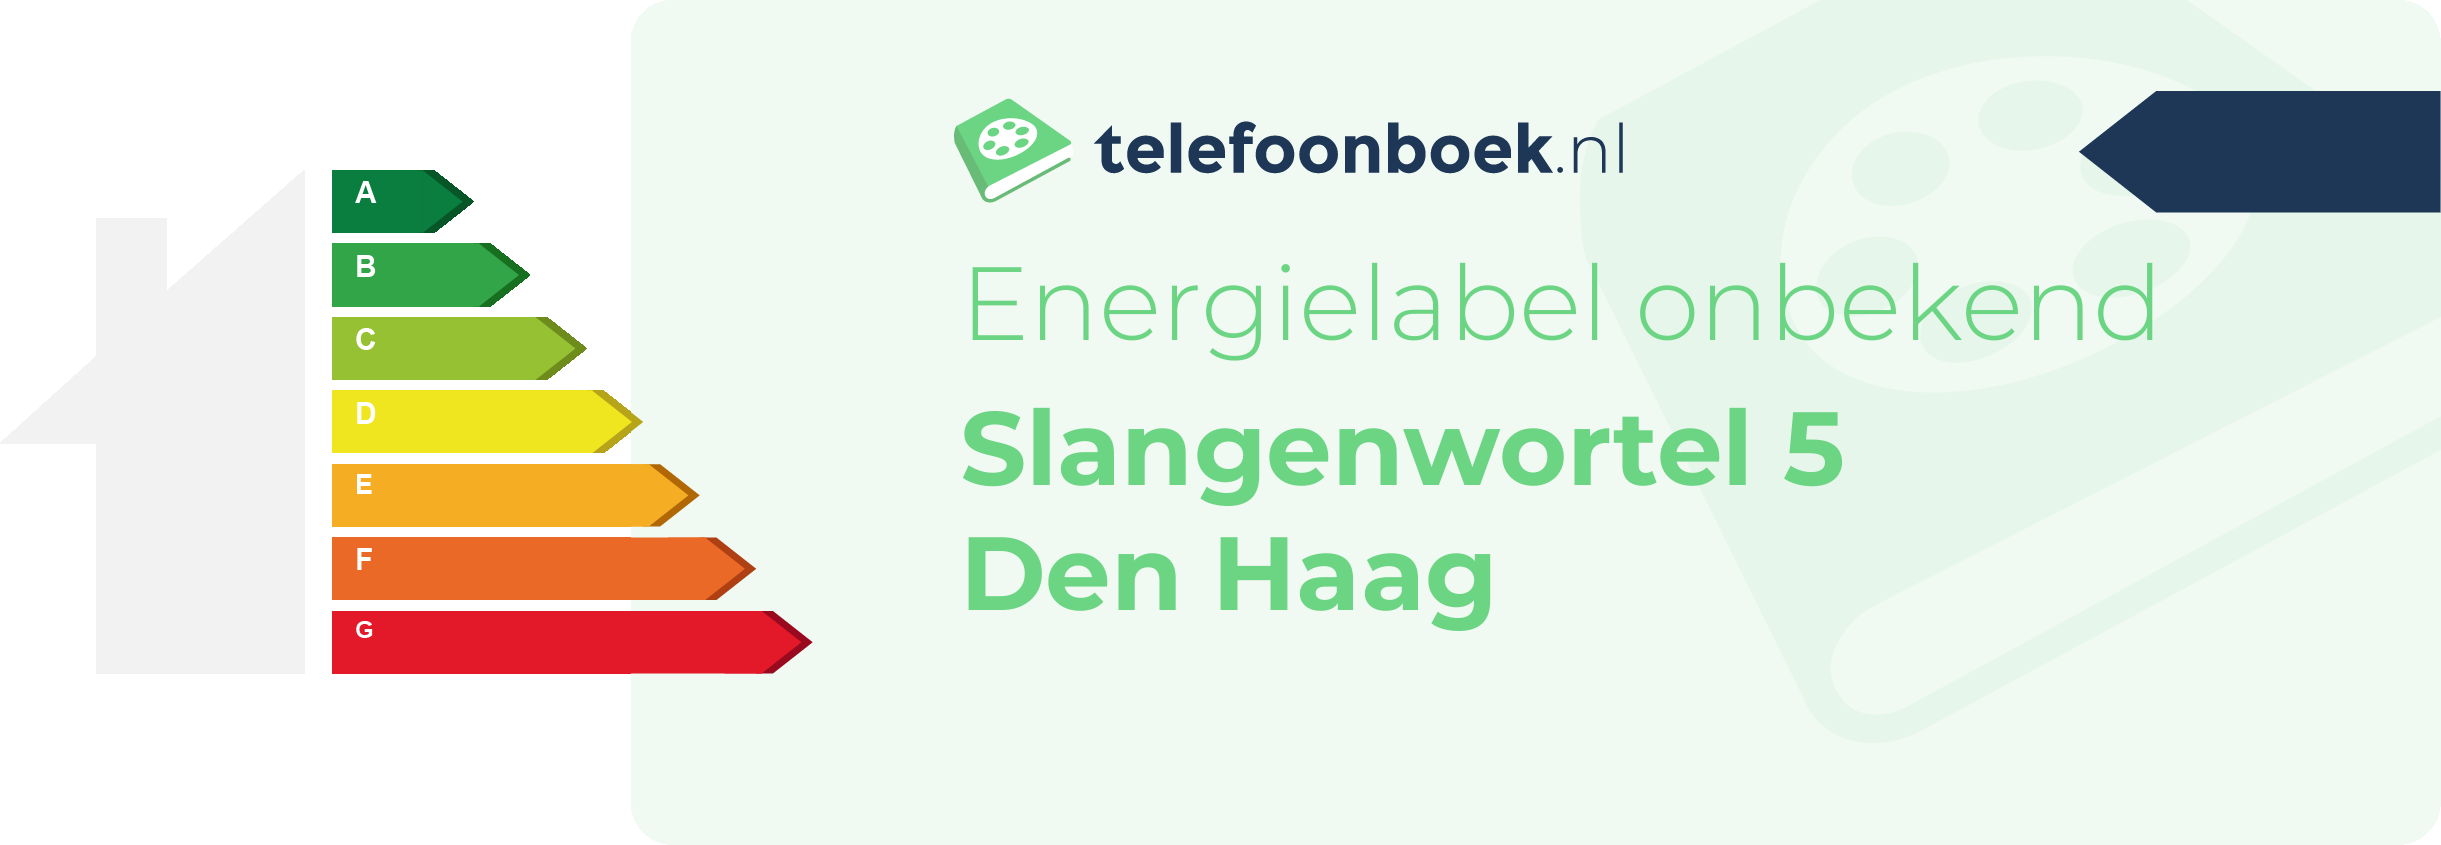 Energielabel Slangenwortel 5 Den Haag